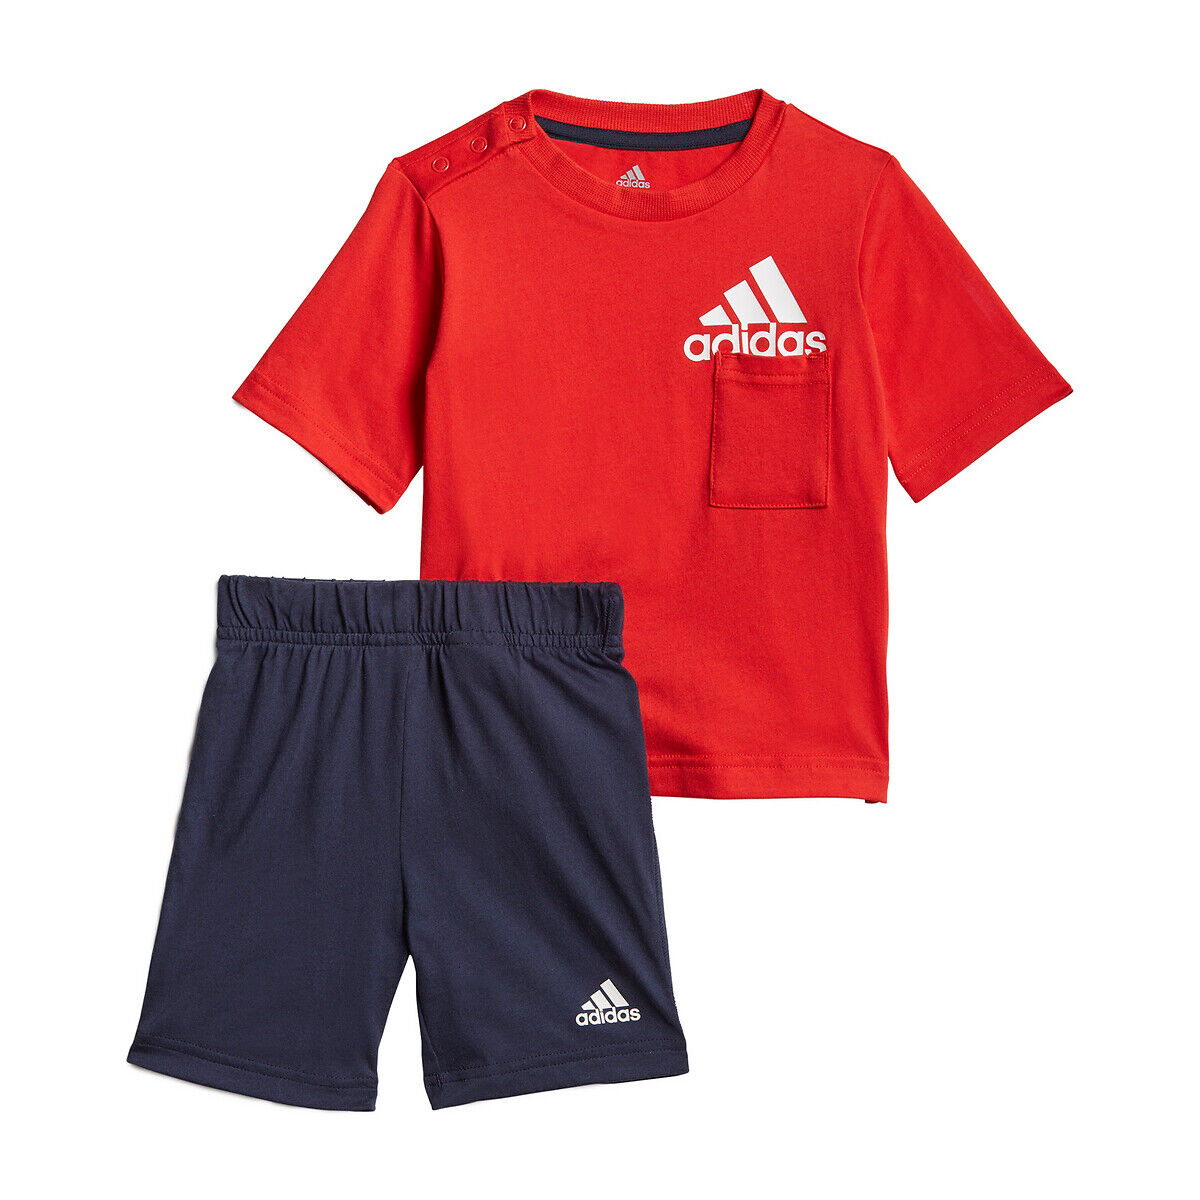 Adidas Set aus T-Shirt und Shorts 3 Monate - 4 Jahre ROT